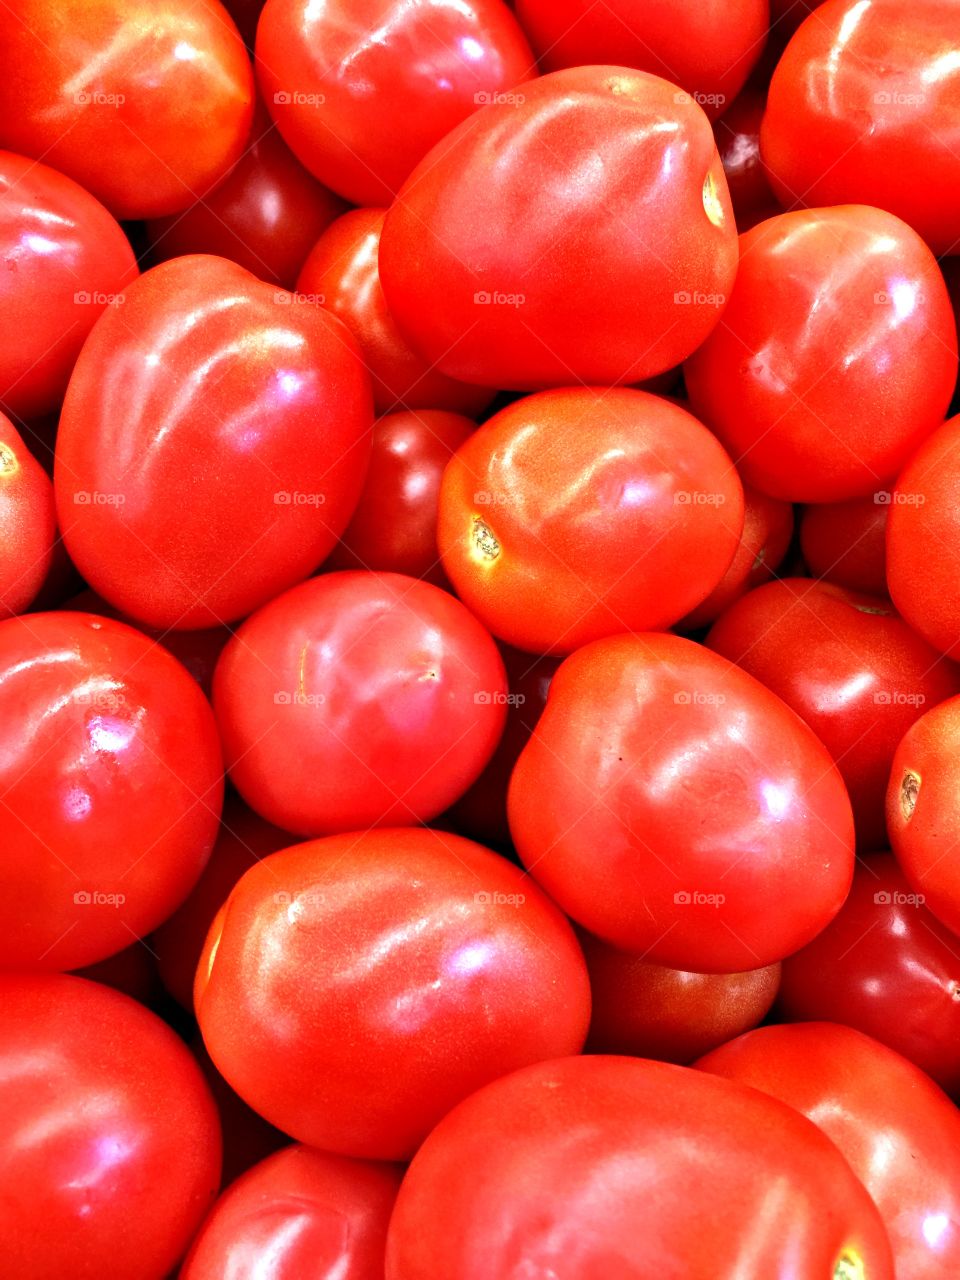 Full frame of tomatoes